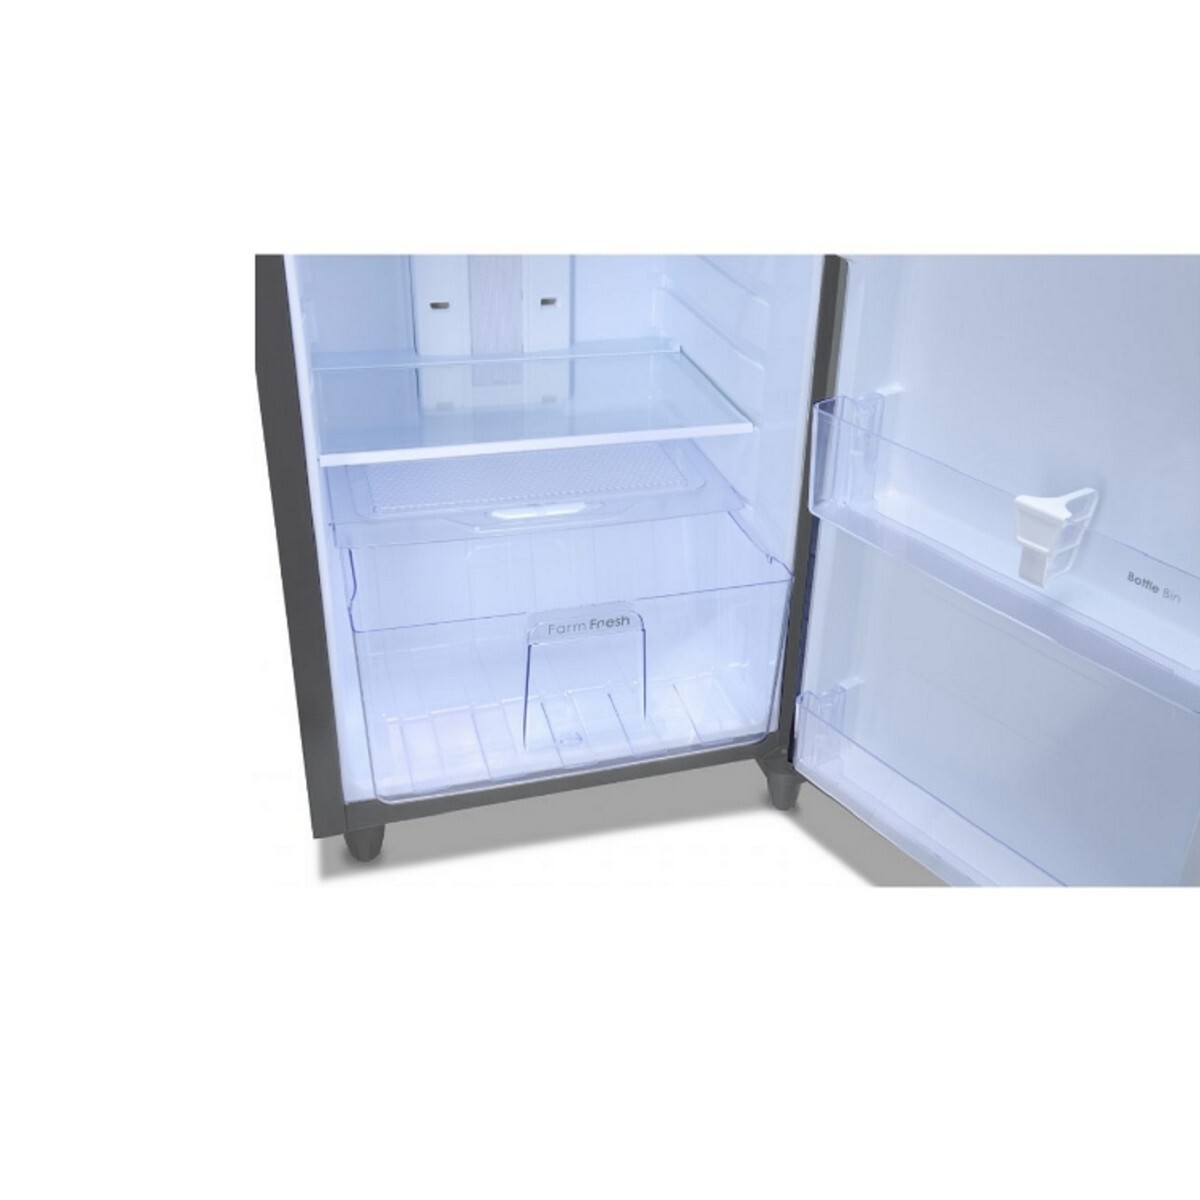 Godrej Frost Refrigerator Free EONALPHA 270B RI ST GL 233L